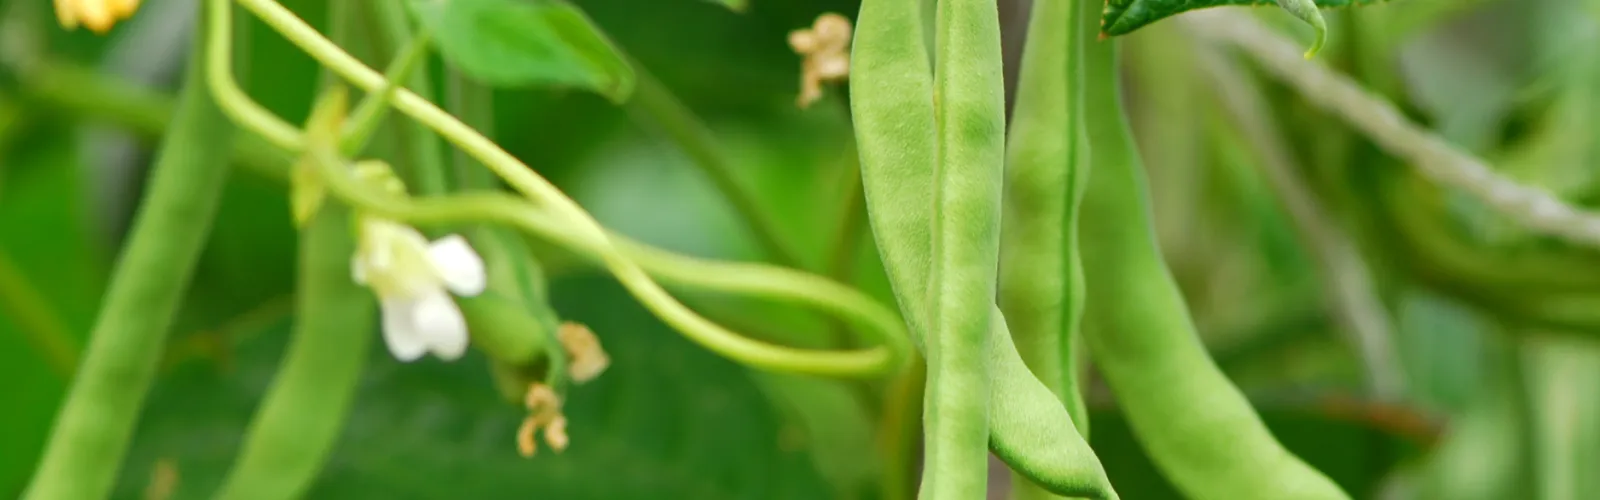 a green bean plant